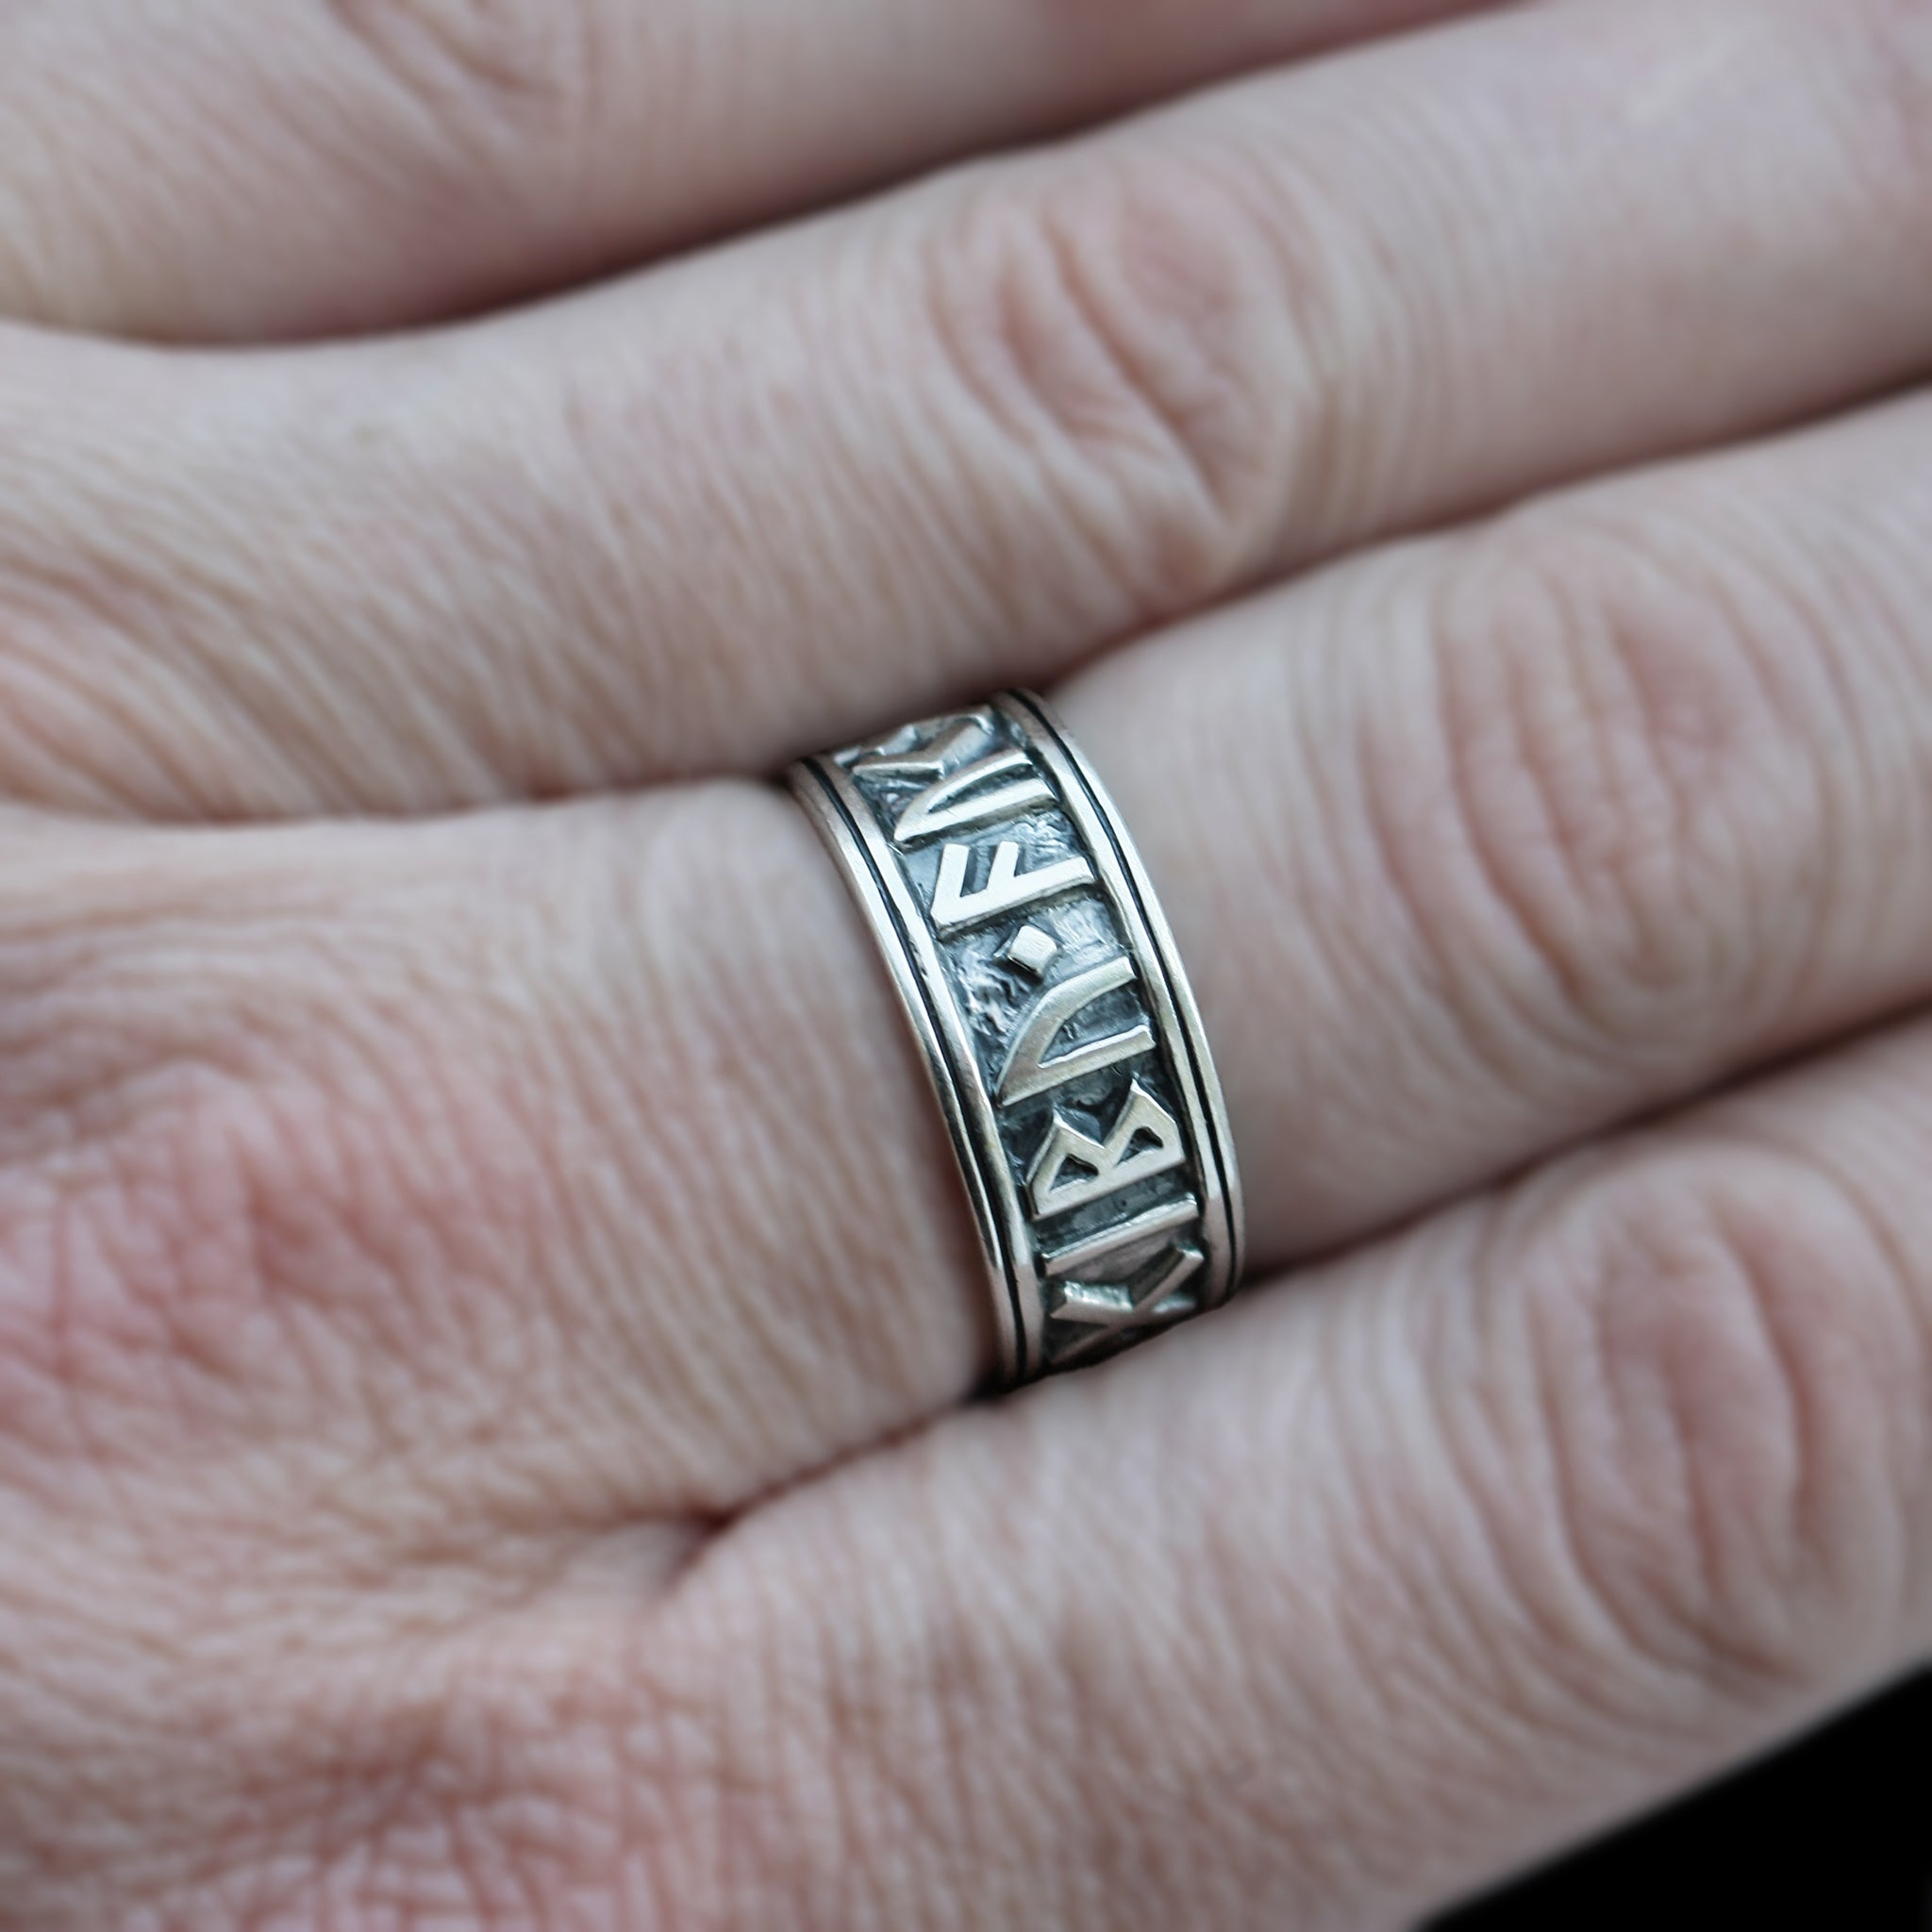 Silver Viking Luck Rune Ring on Finger